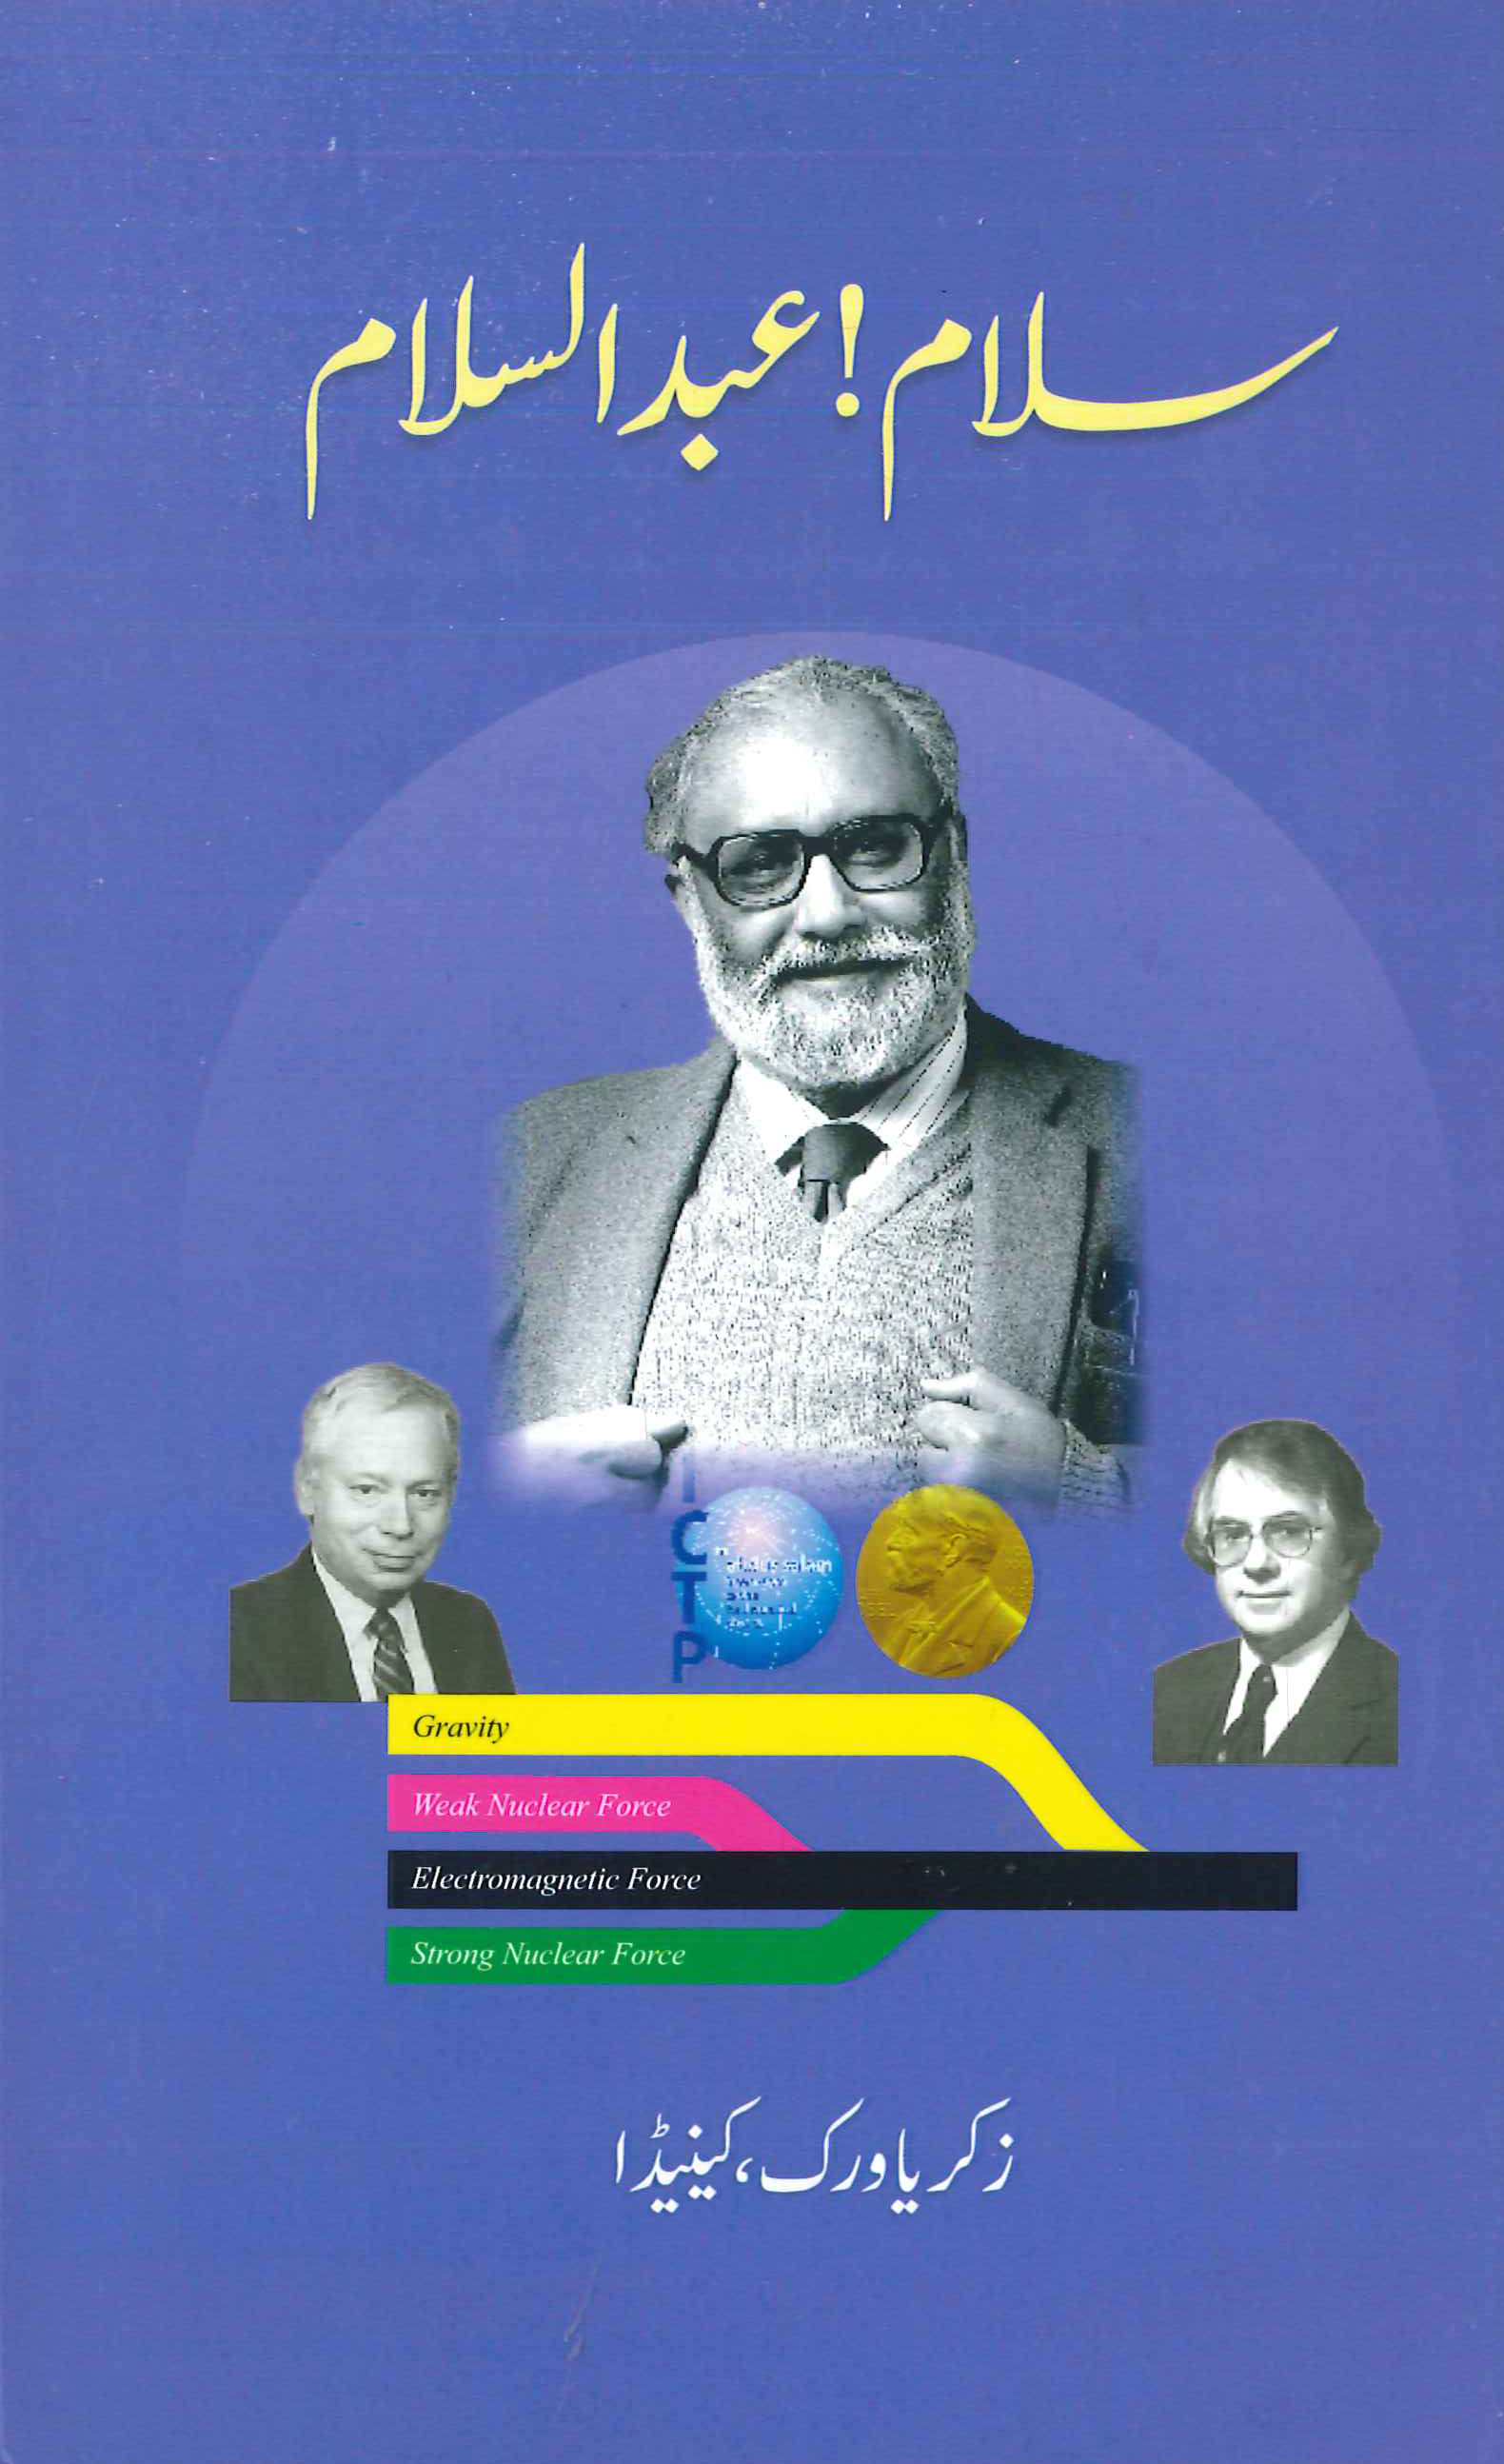 Salam Abdus Salam (1926-1996): articles on Nobel Laureate Dr. Abdus Salam